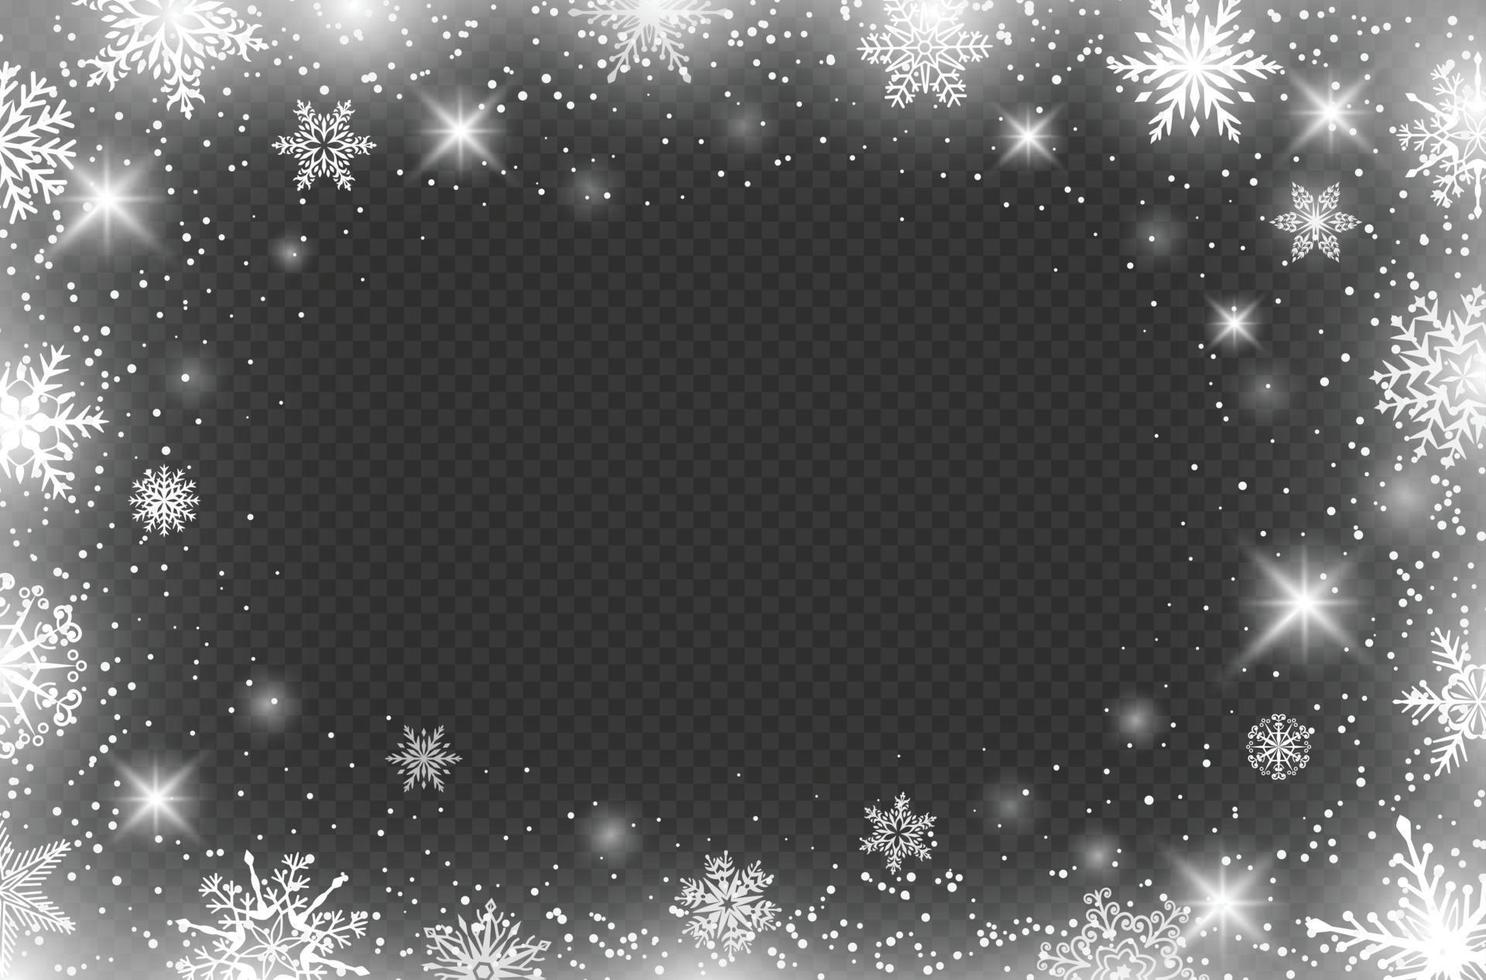 Winter Schneeflocken Grenze, gefroren Rahmen Grenzen Wirkung. Weihnachten Dekoration mit Eis Flocken, Schnee Kristalle und Partikel Vektor Hintergrund